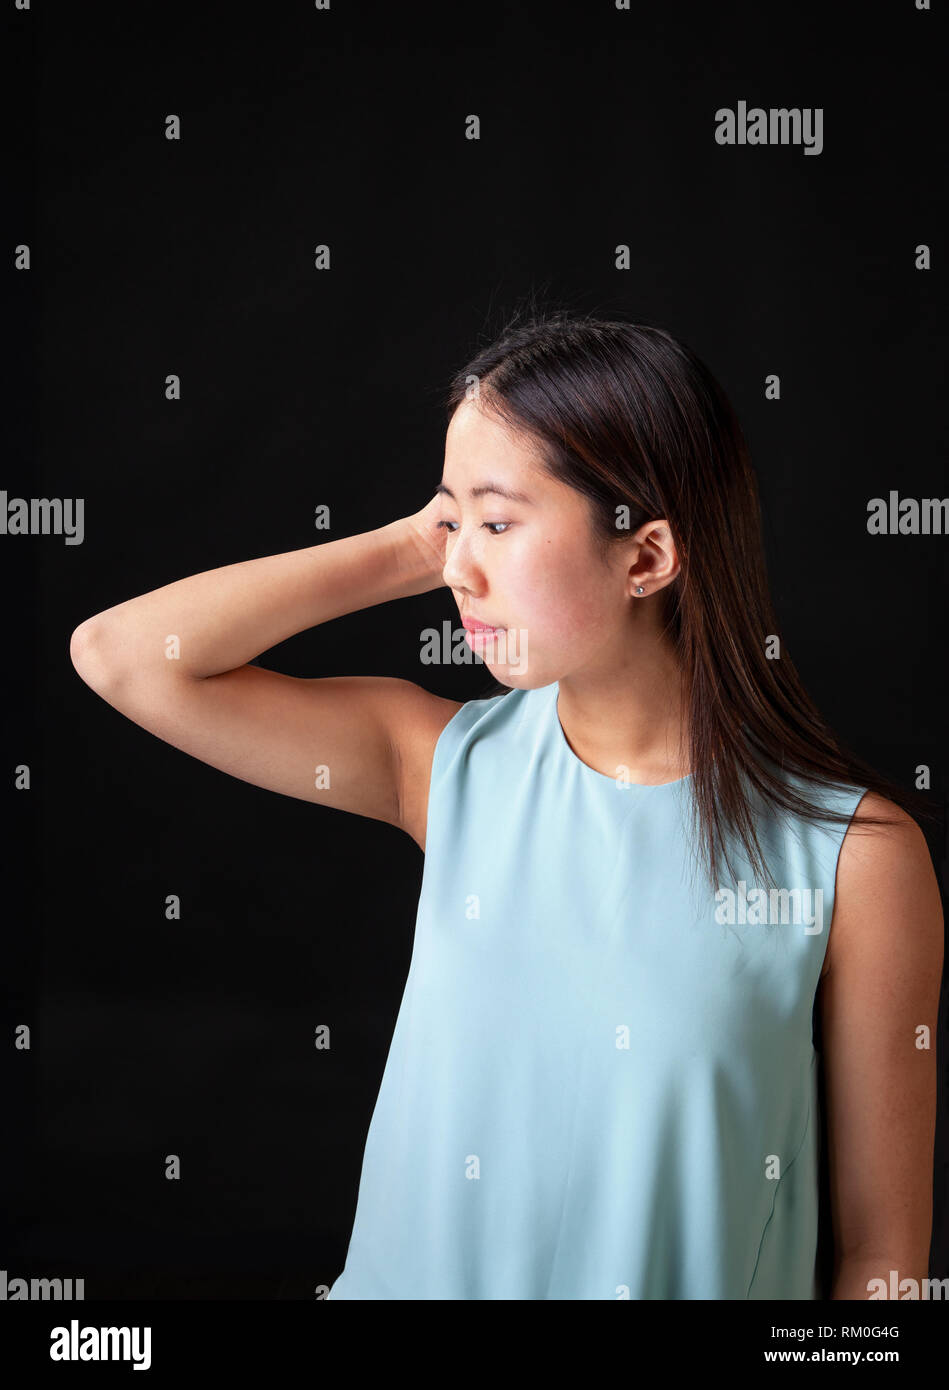 Schöne junge asiatische Frau teen model im Studio auf schwarzem Hintergrund posiert. Stockfoto